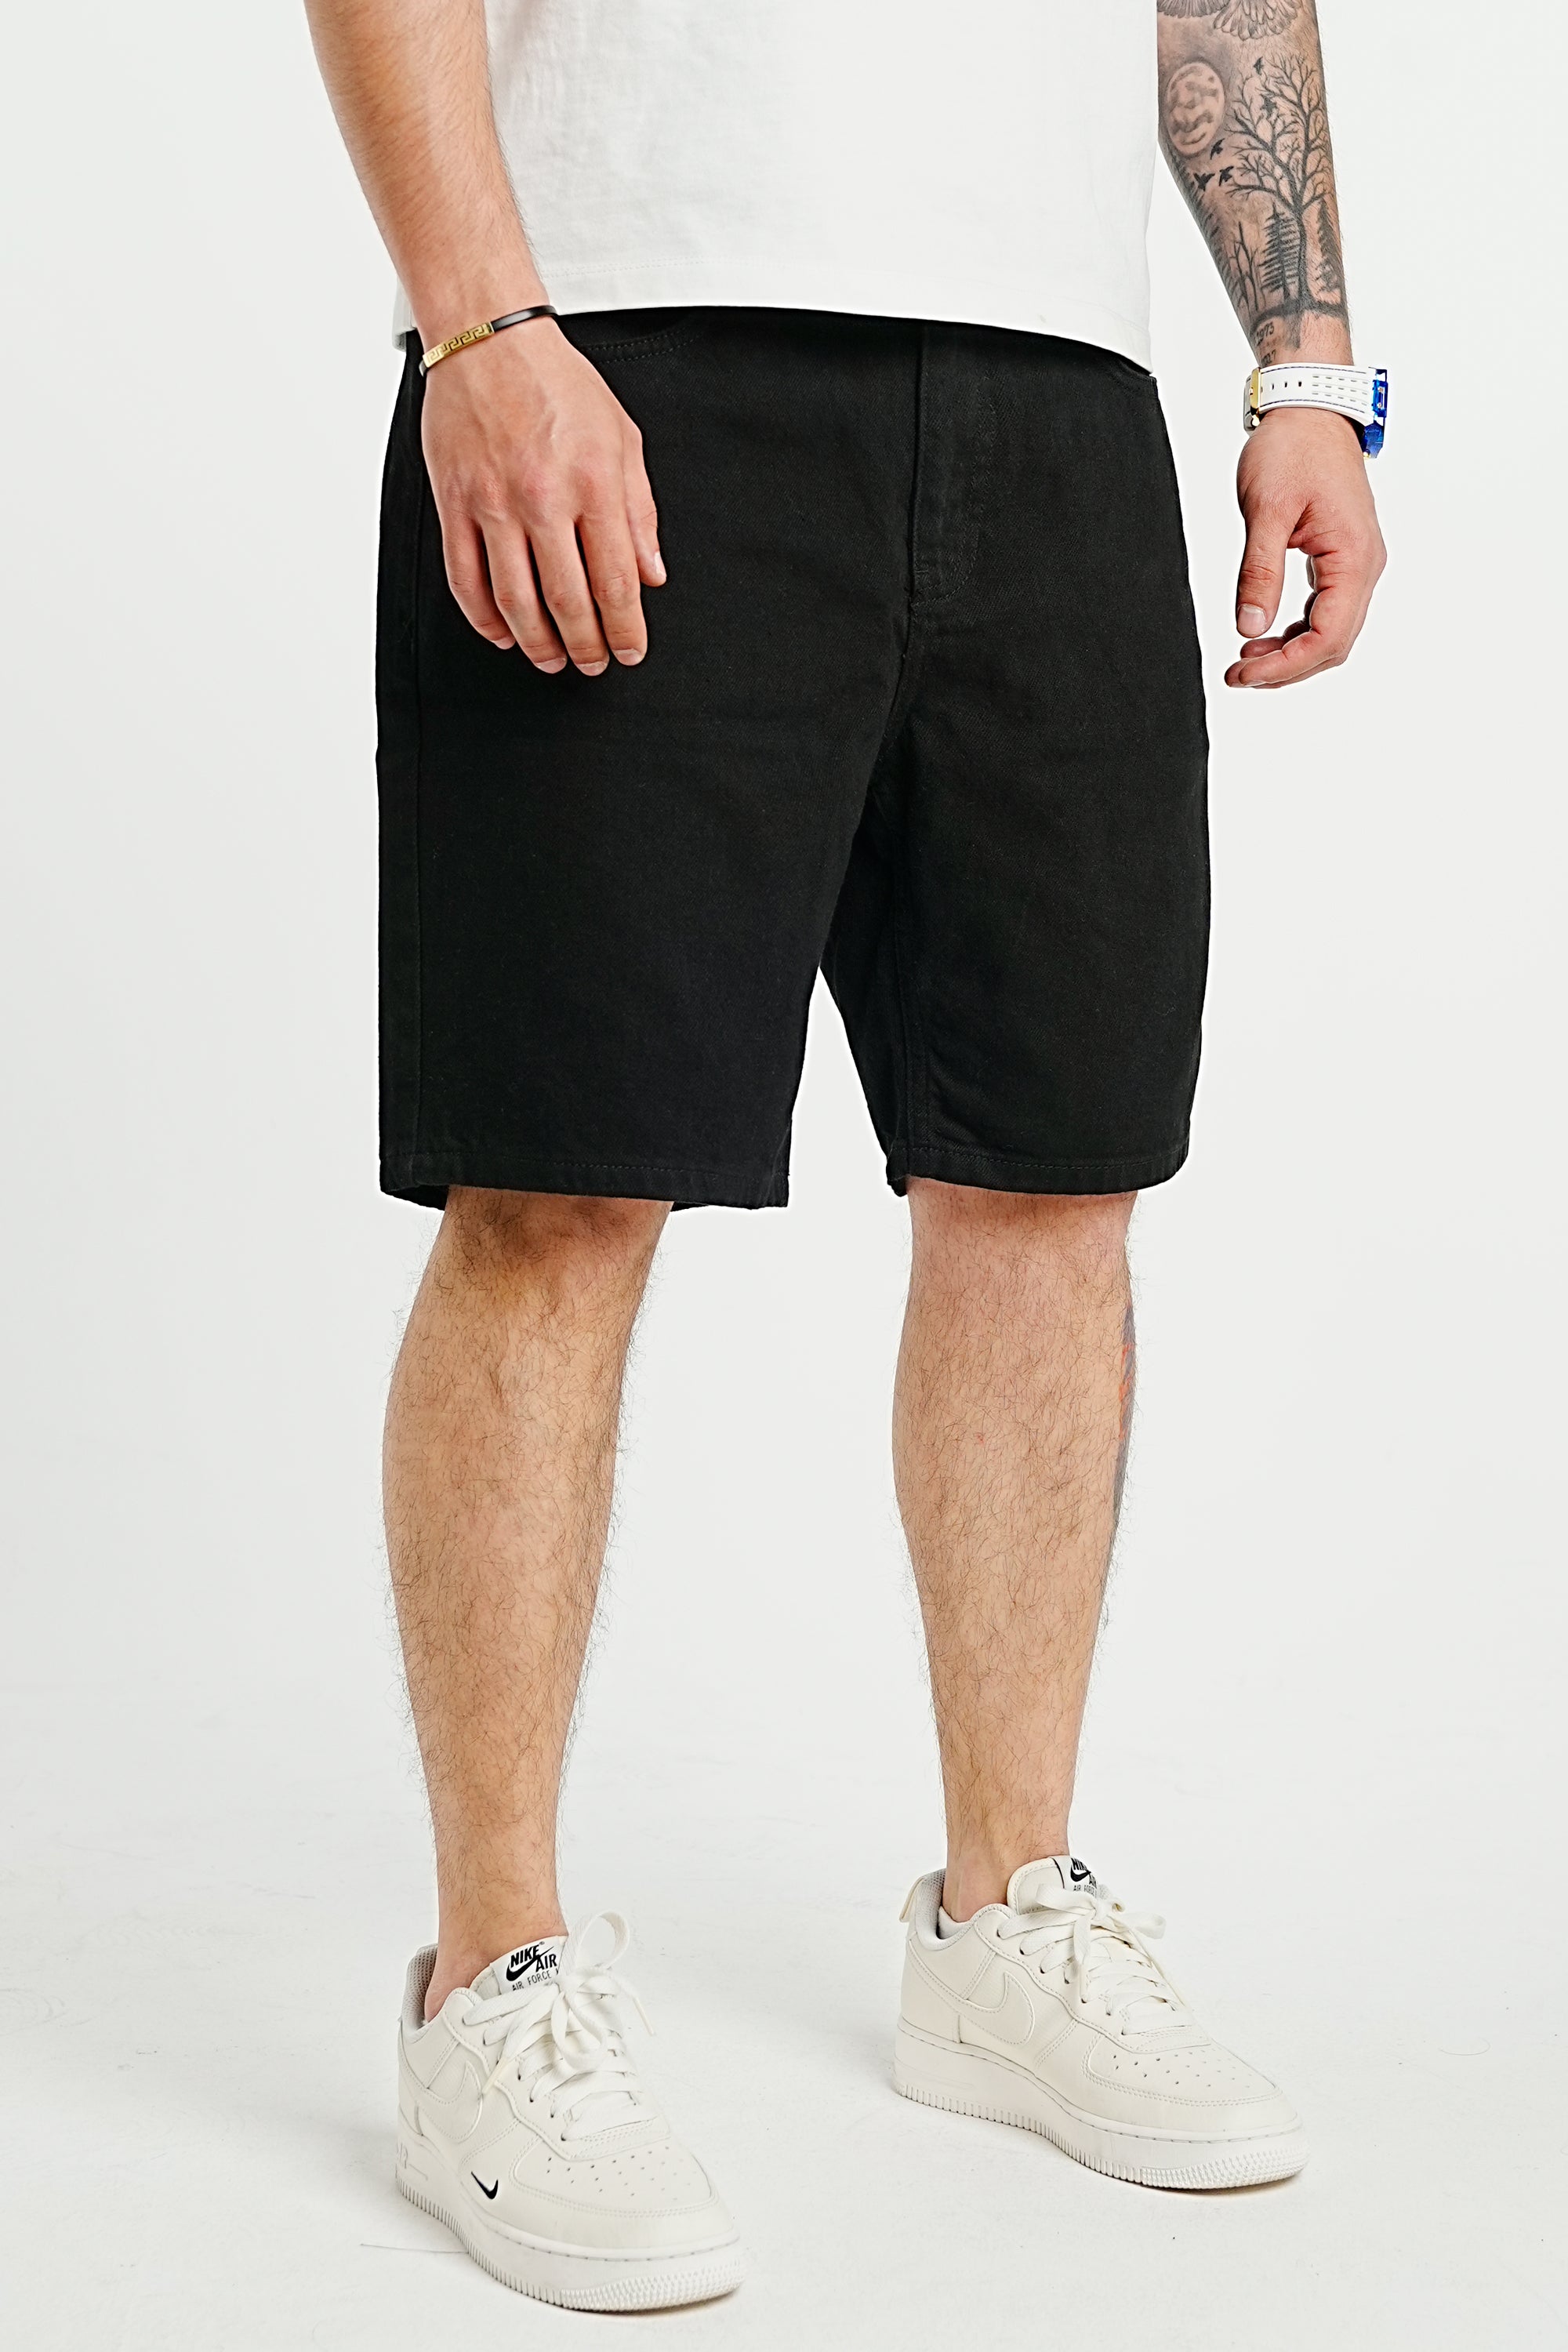 Premium Basic Black Denim Shorts - UNEFFECTED STUDIOS® - Shorts - 2Y PREMIUM